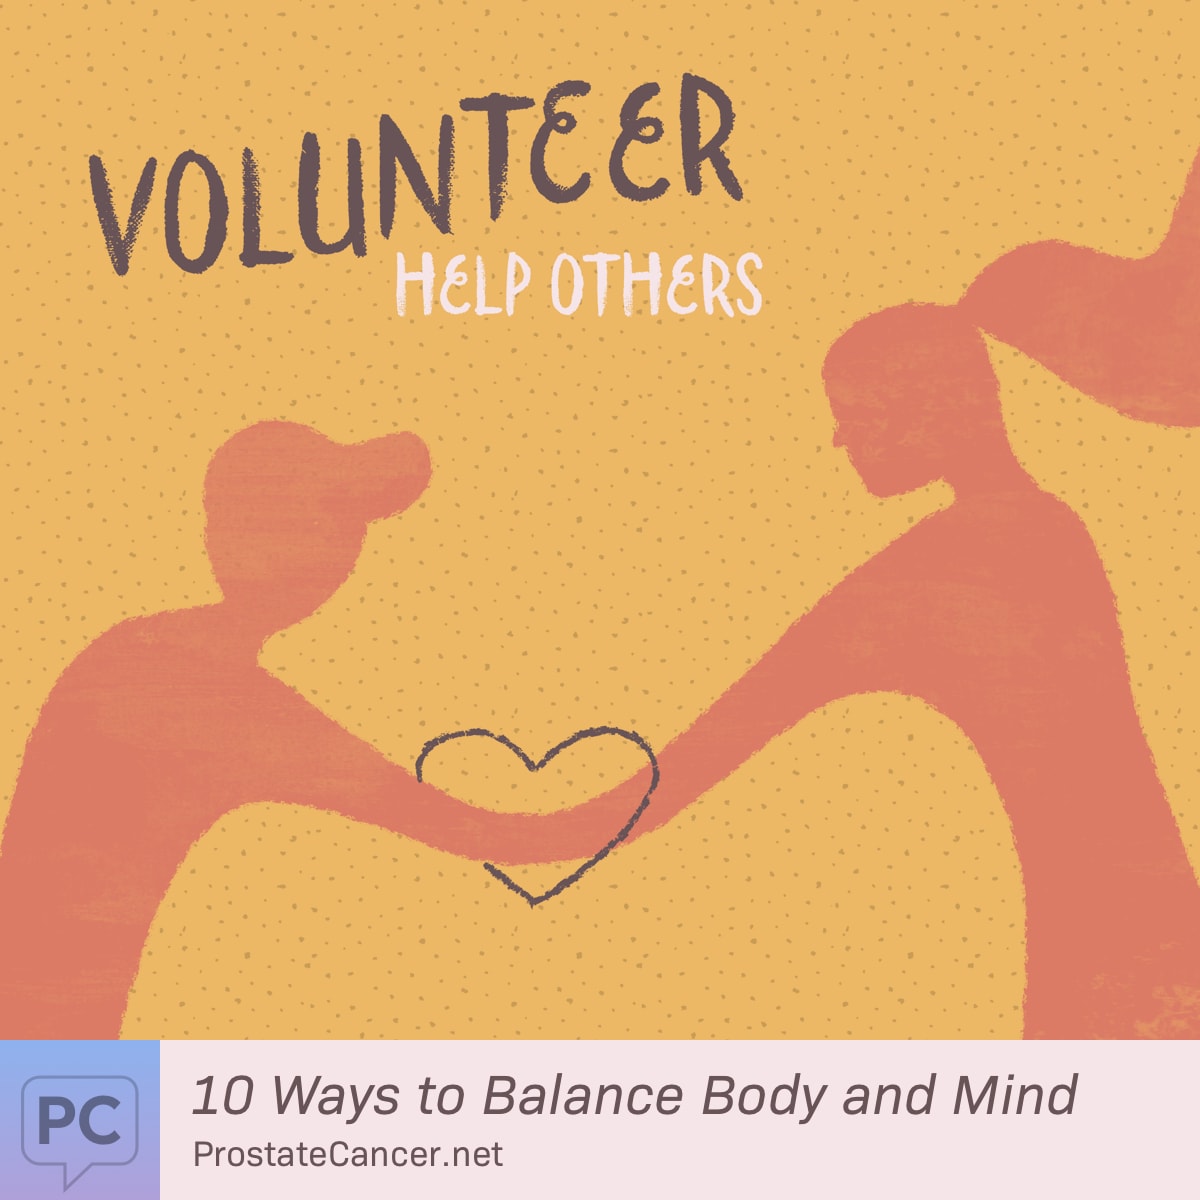 Volunteer, Help Others